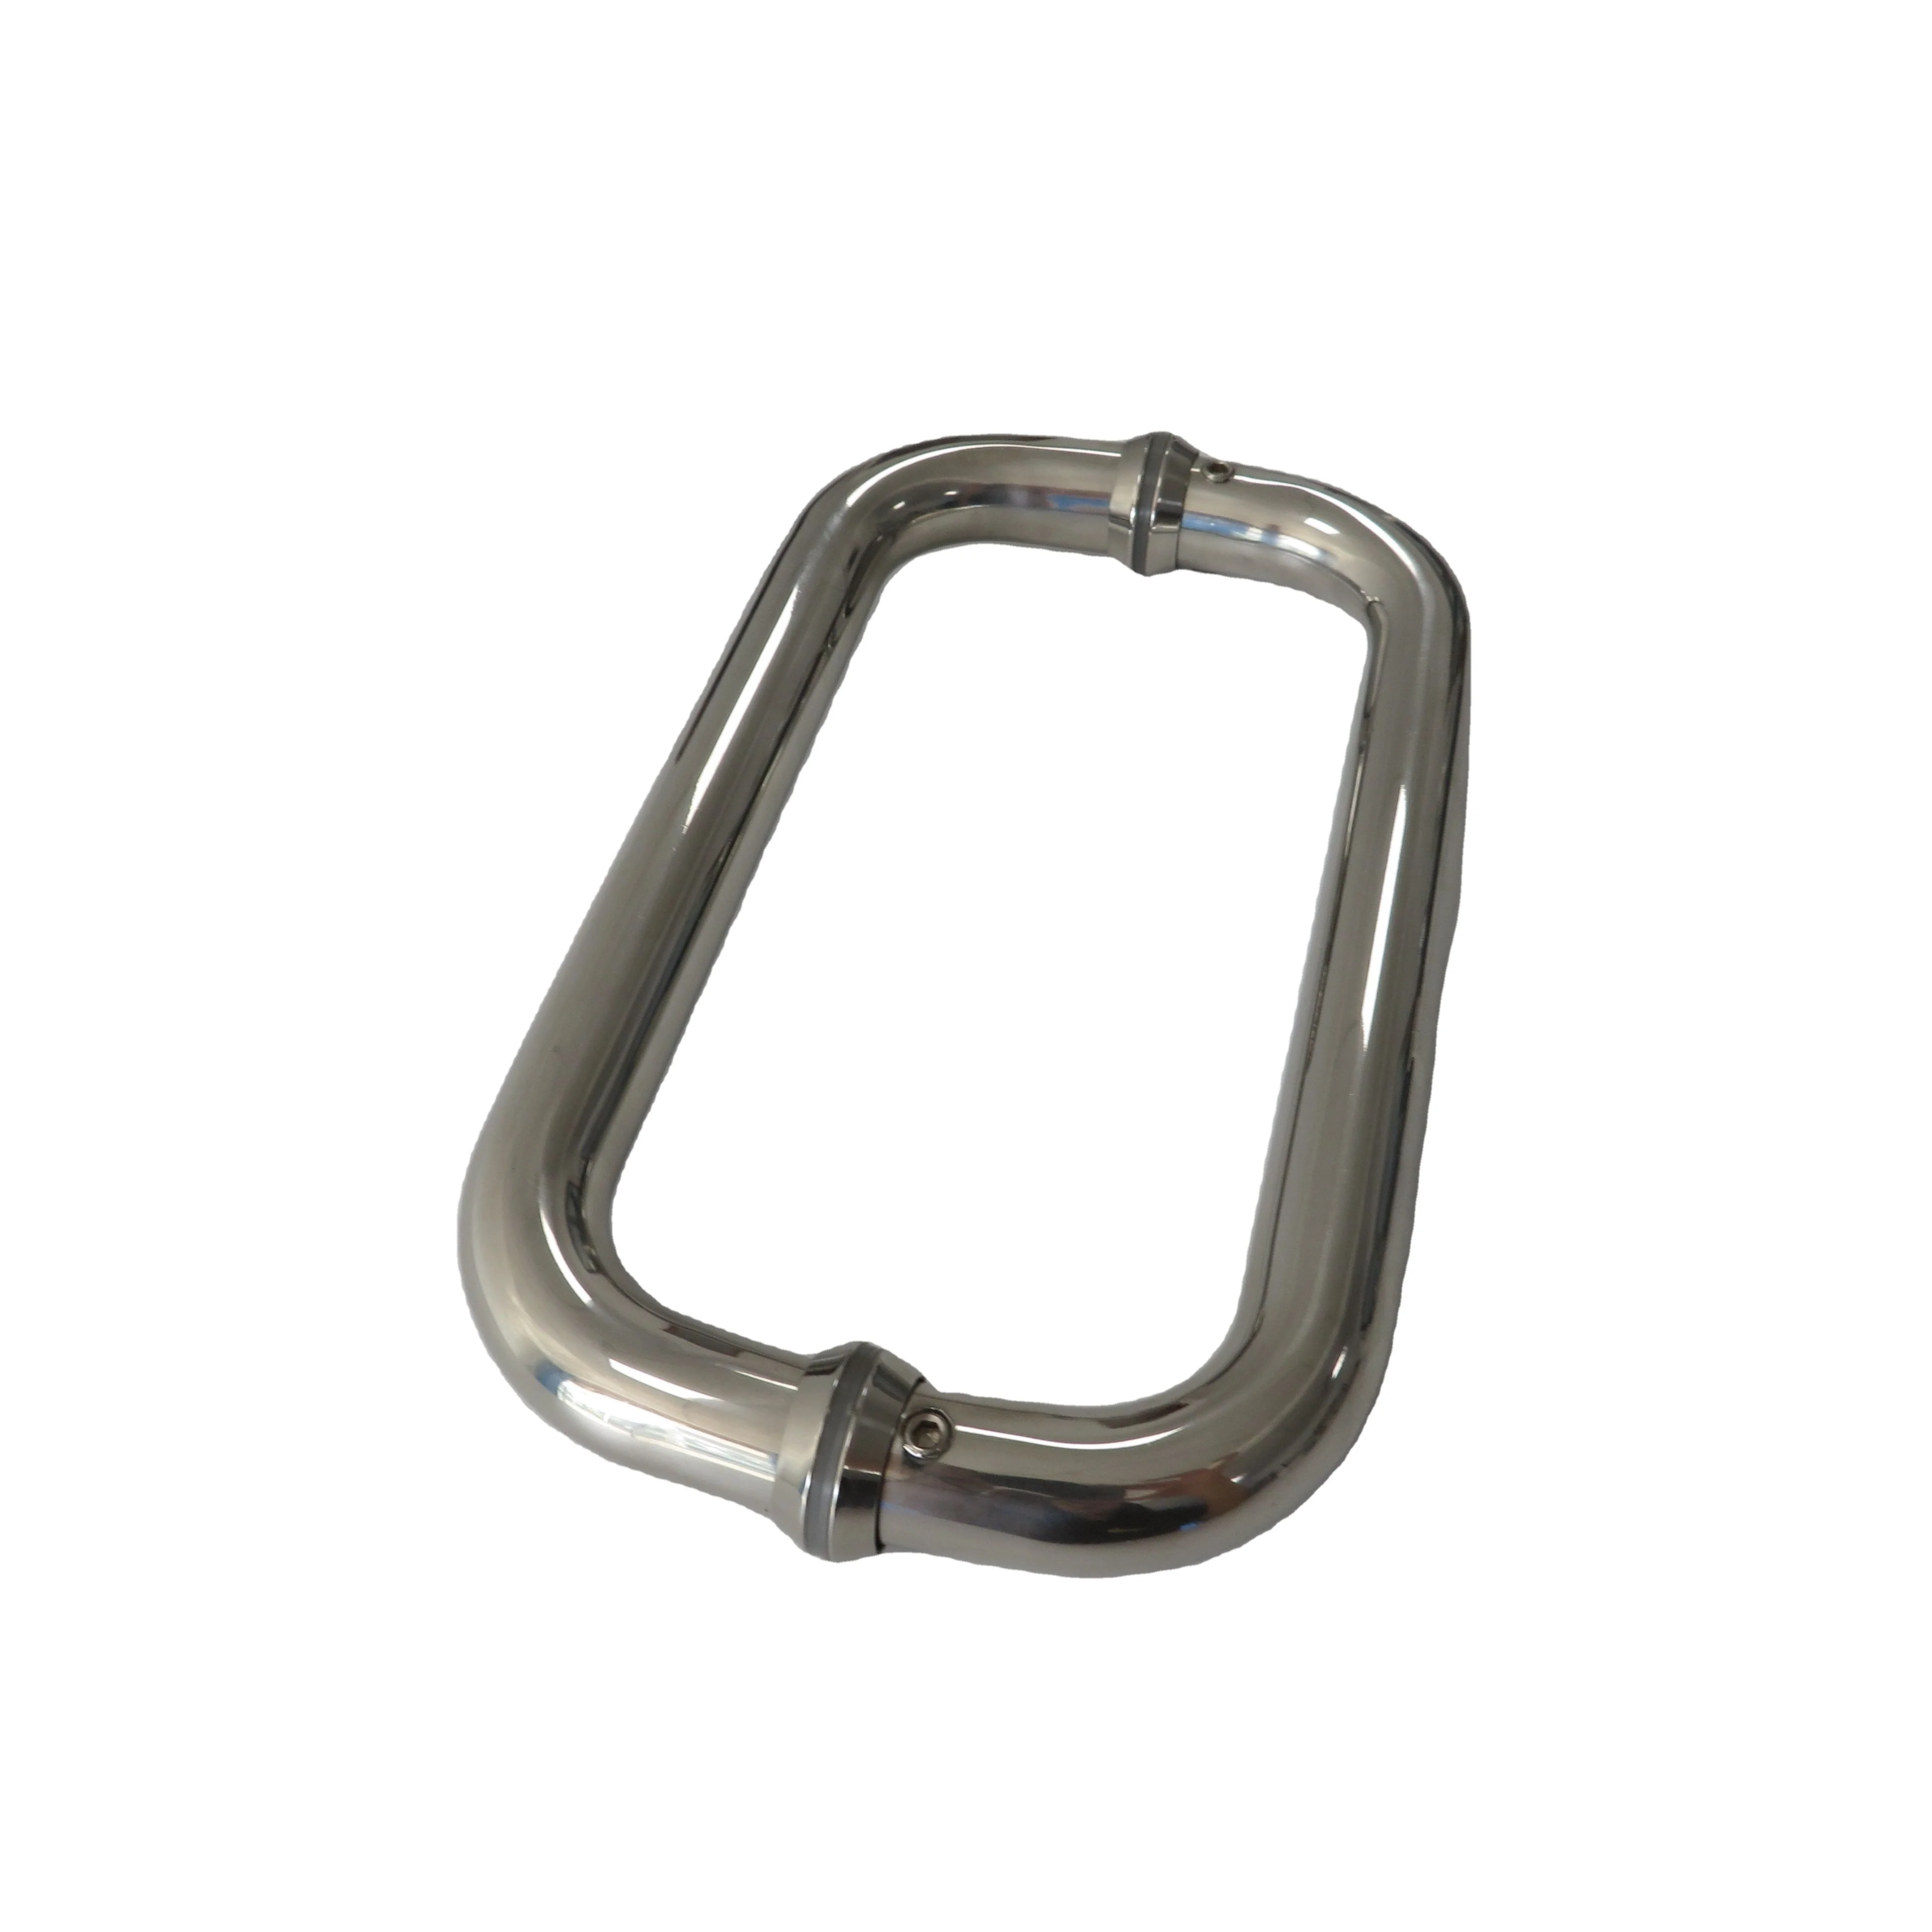 Custom stainless steel Pull and Flush Barn Door Handle Set Glass door doorknob (1600710196641)